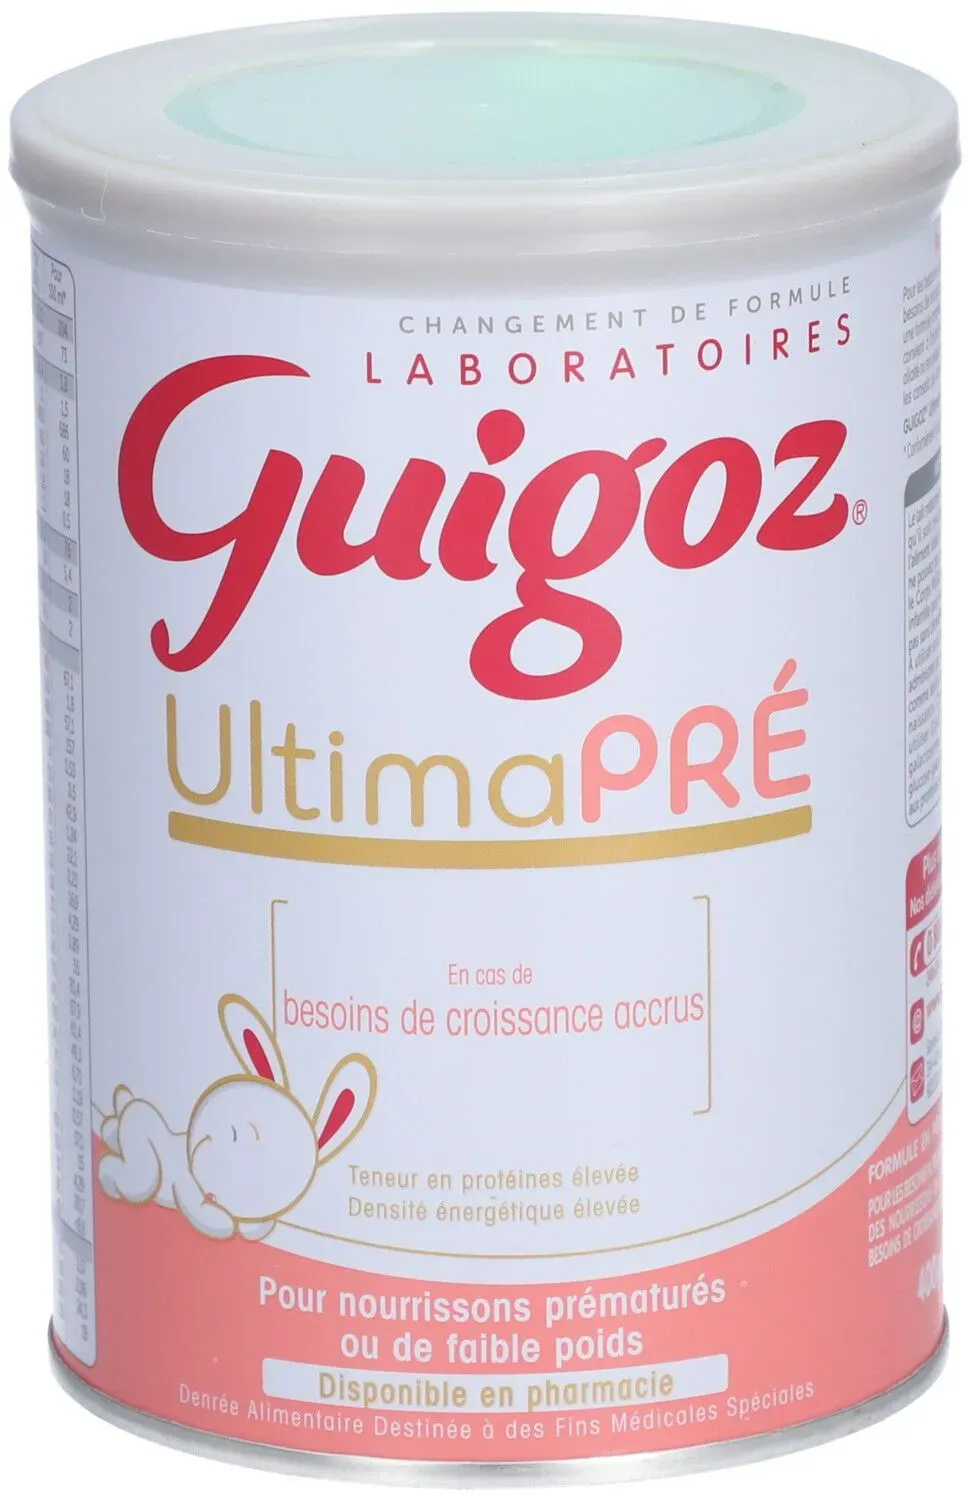 GUIGOZ ULTIMA PRÉ - Denrée alimentaire destinée à des fins médicales spéciales. - bt 400 400 g Poudre